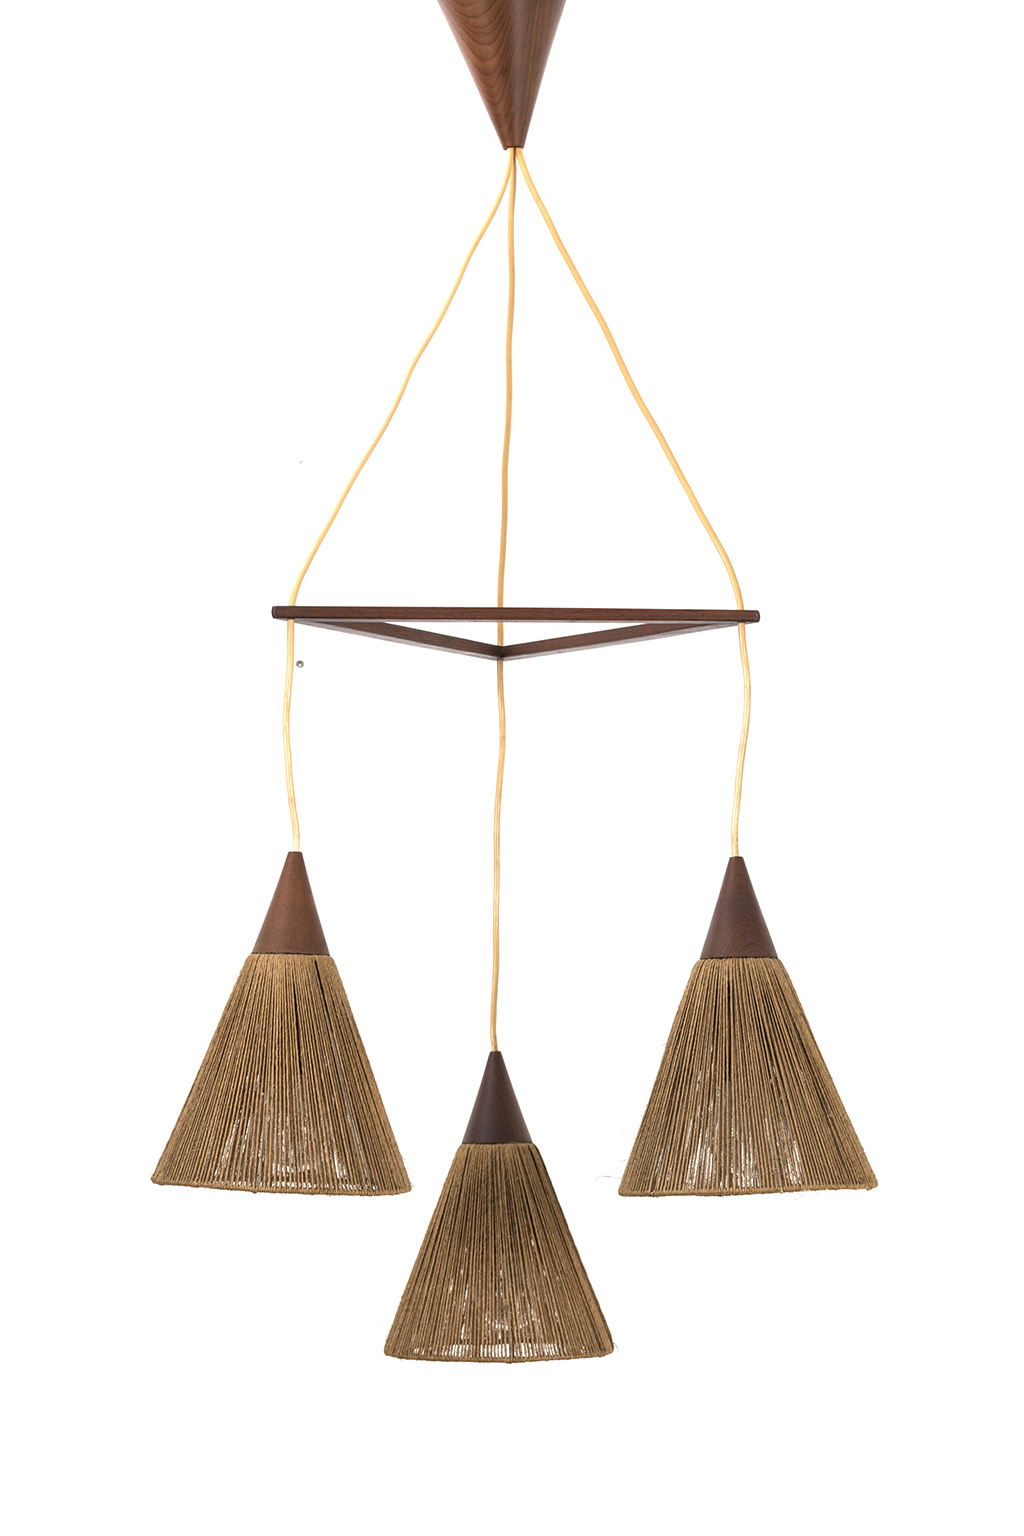 Deense teak hanglamp met touw